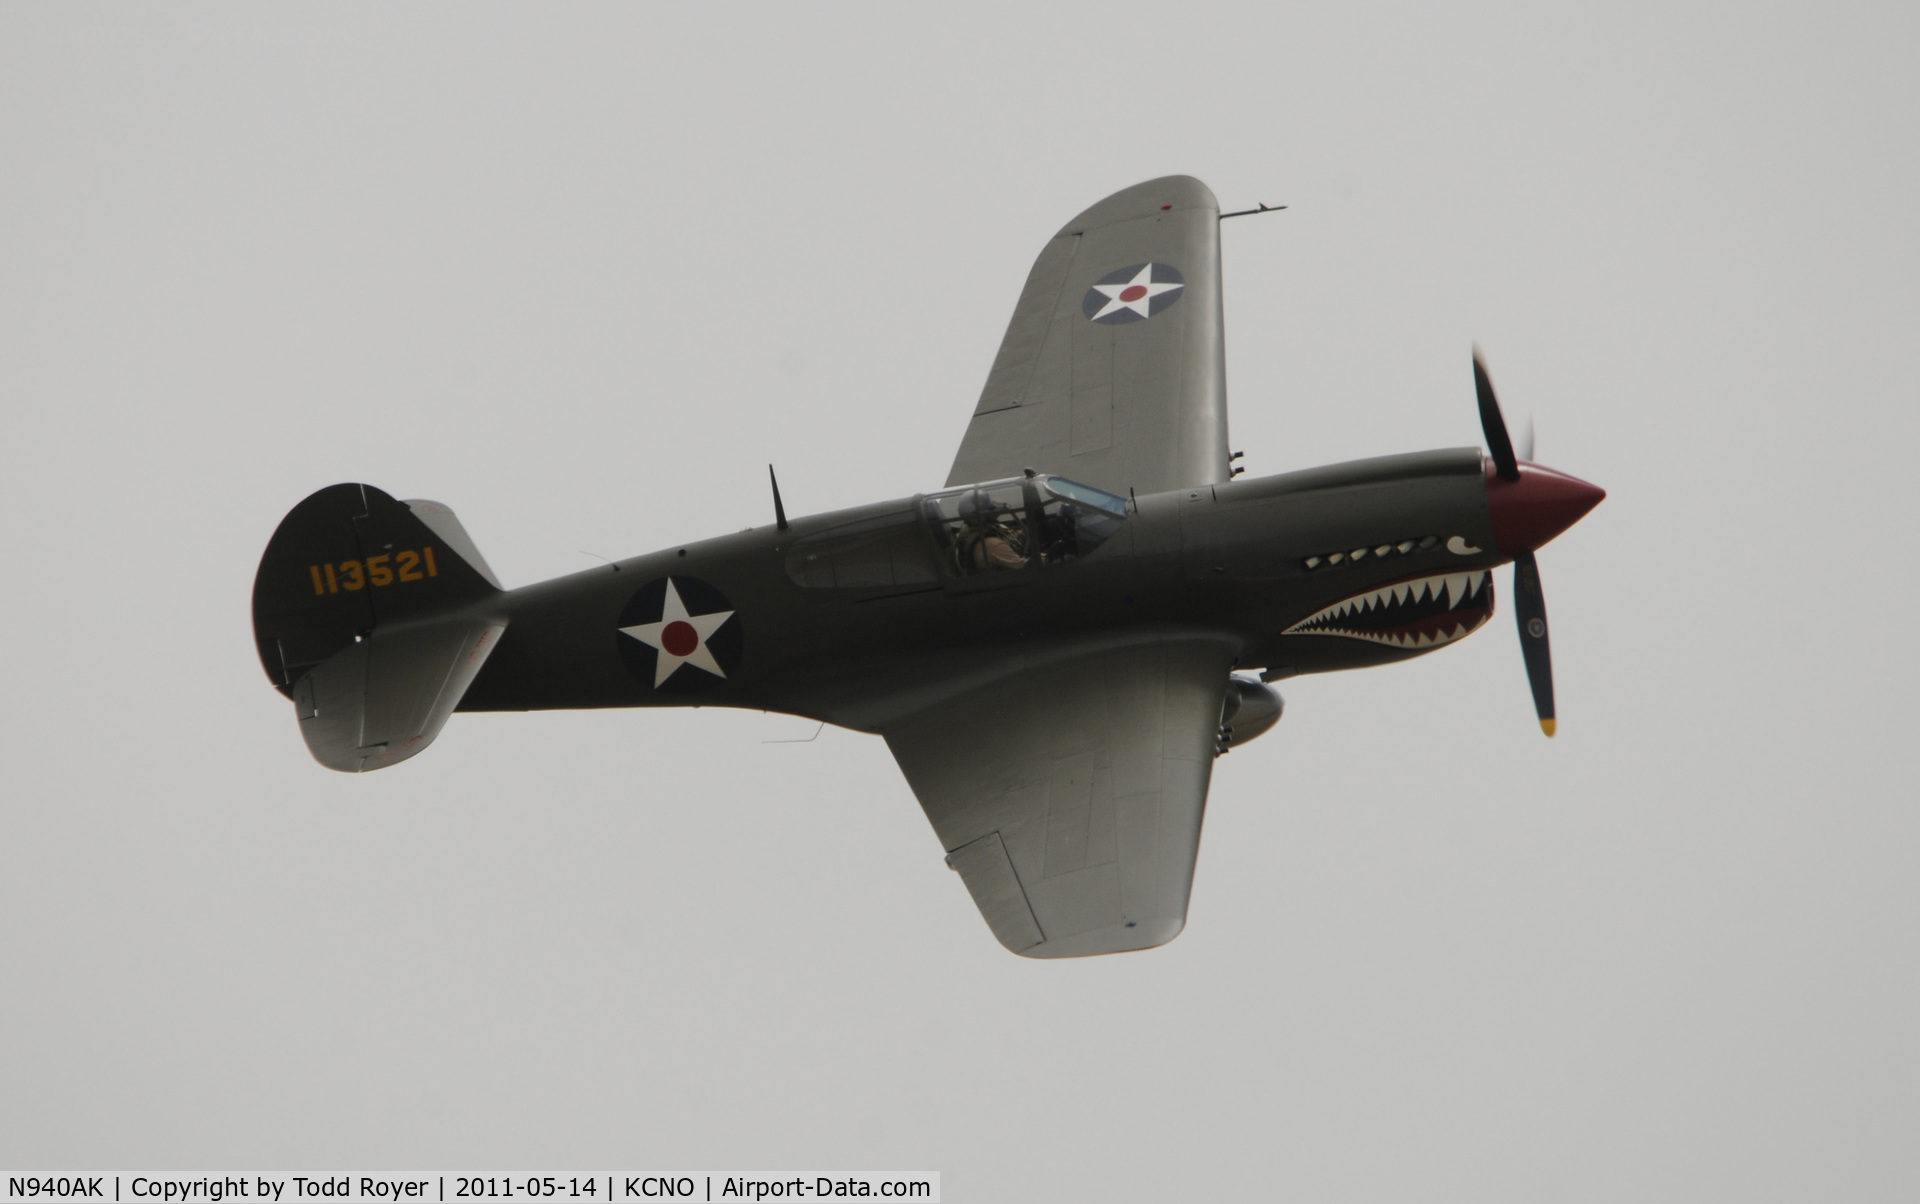 N940AK, 1941 Curtiss P-40E Warhawk C/N 15321, Chino Airshow 2011